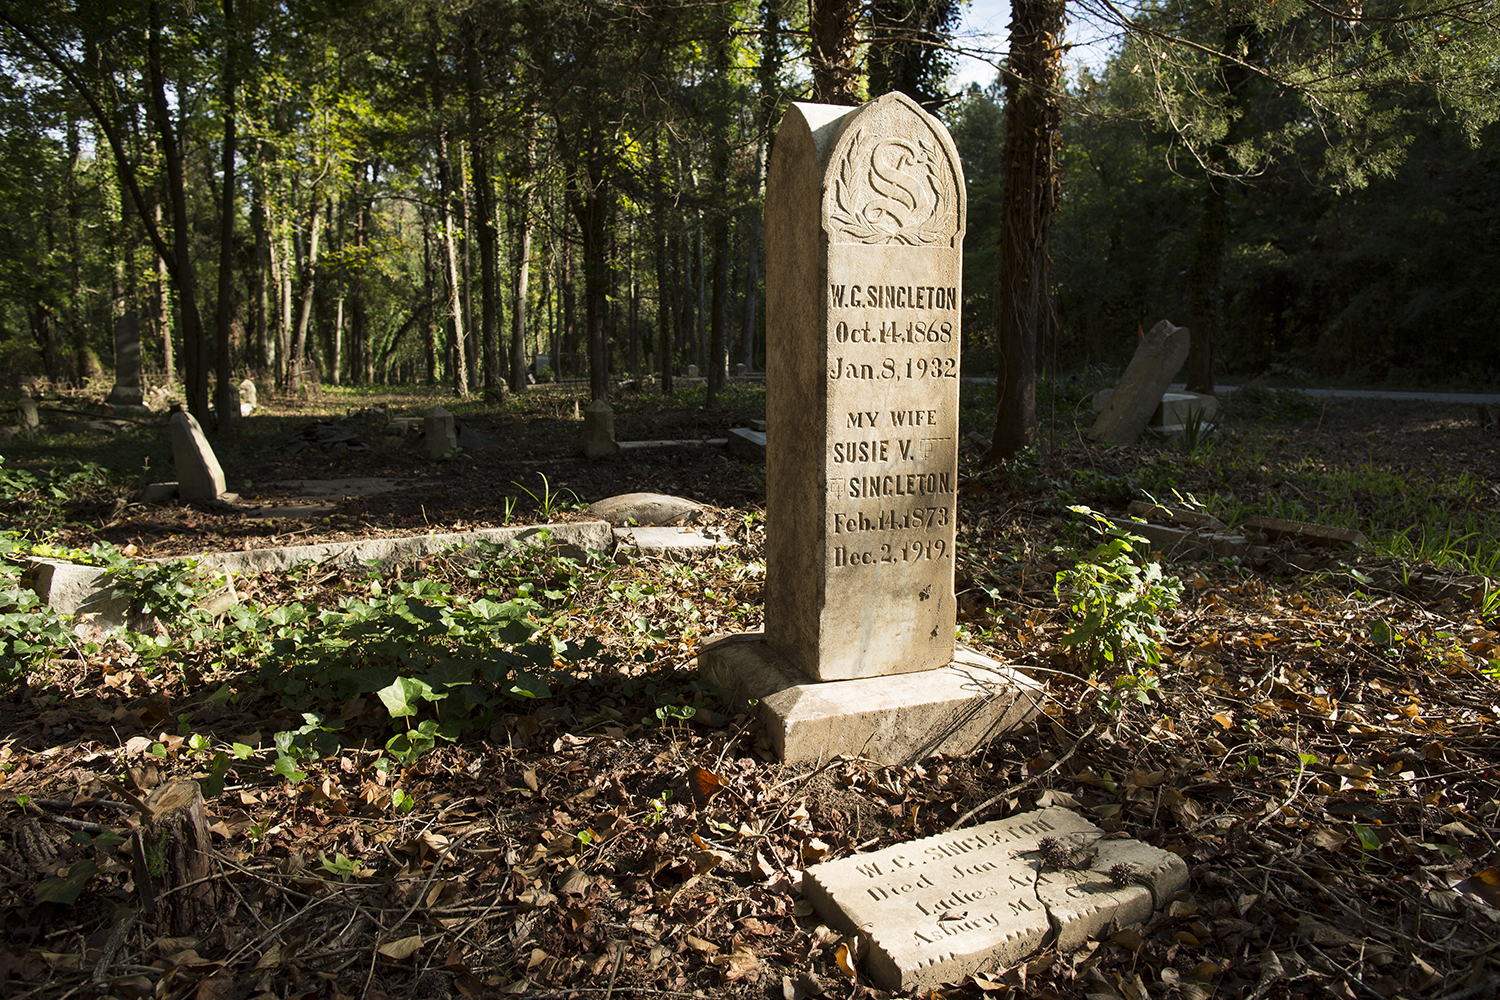  Singleton family memorial.&nbsp;East End Cemetery, Henrico County, Virginia, October 2015. Photo: ©BP 